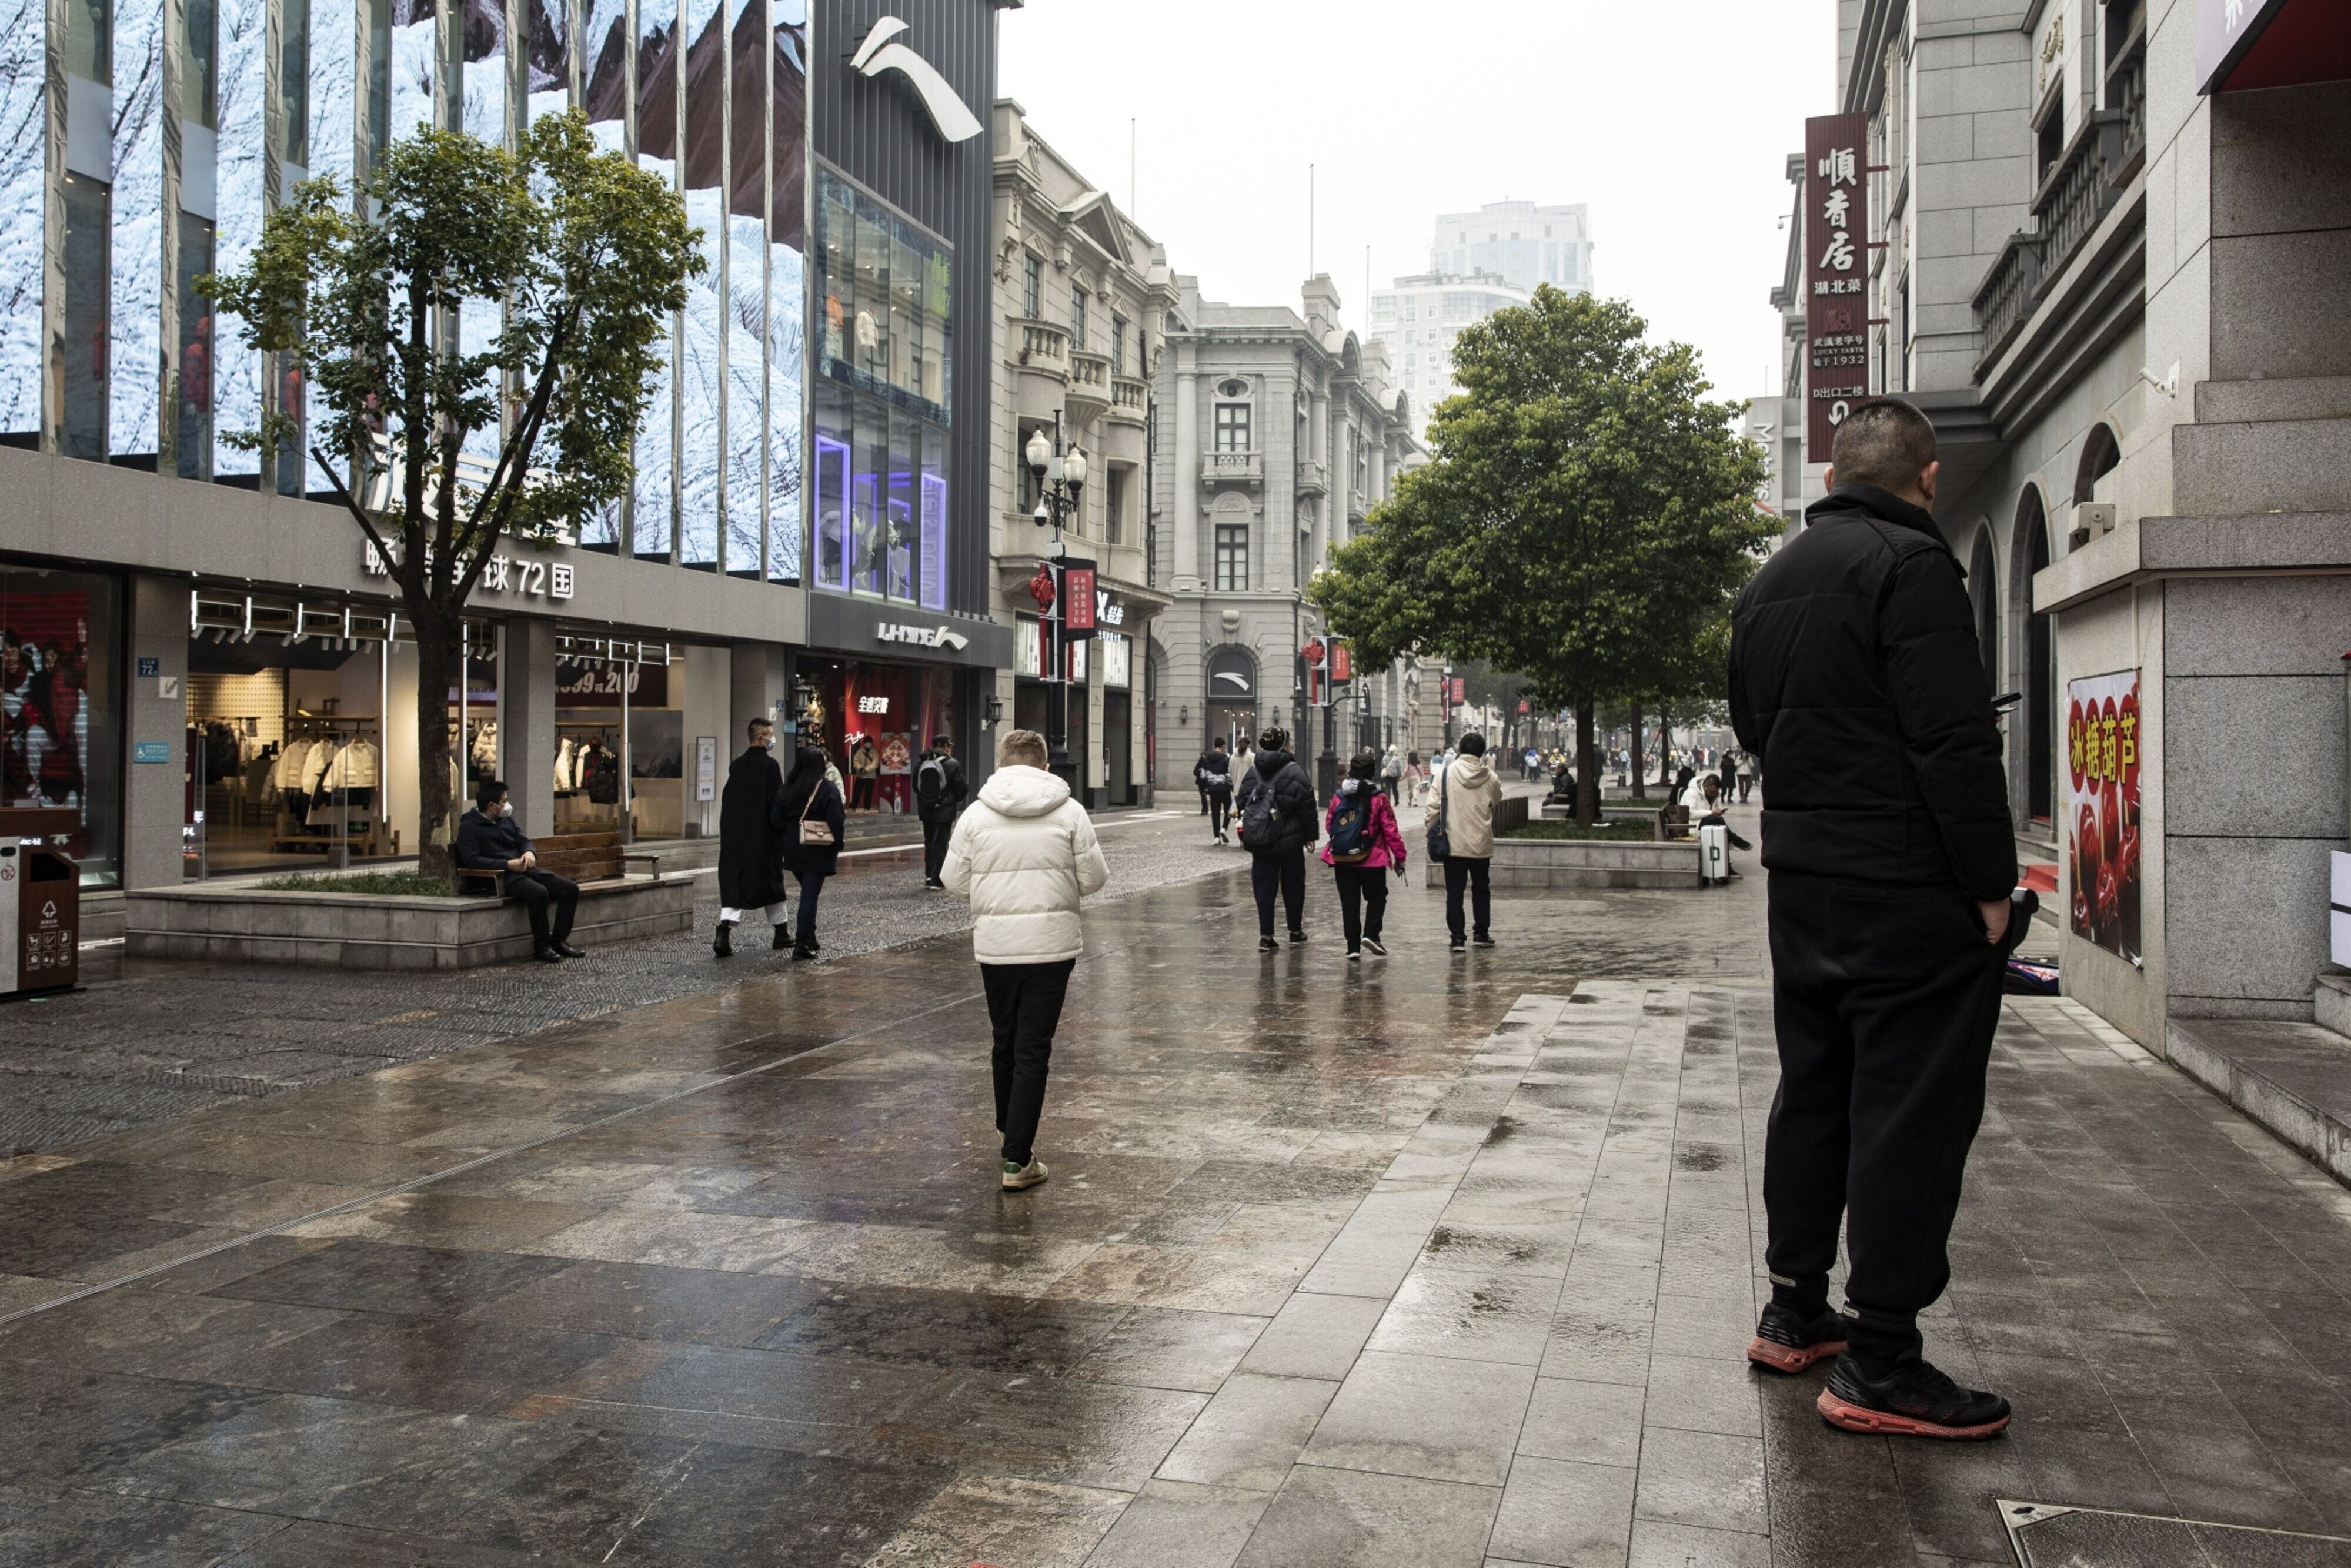 Personas visitan una de las zonas comerciales más populares de Wuhan, considerada como la 'cuna' del COVID-19.